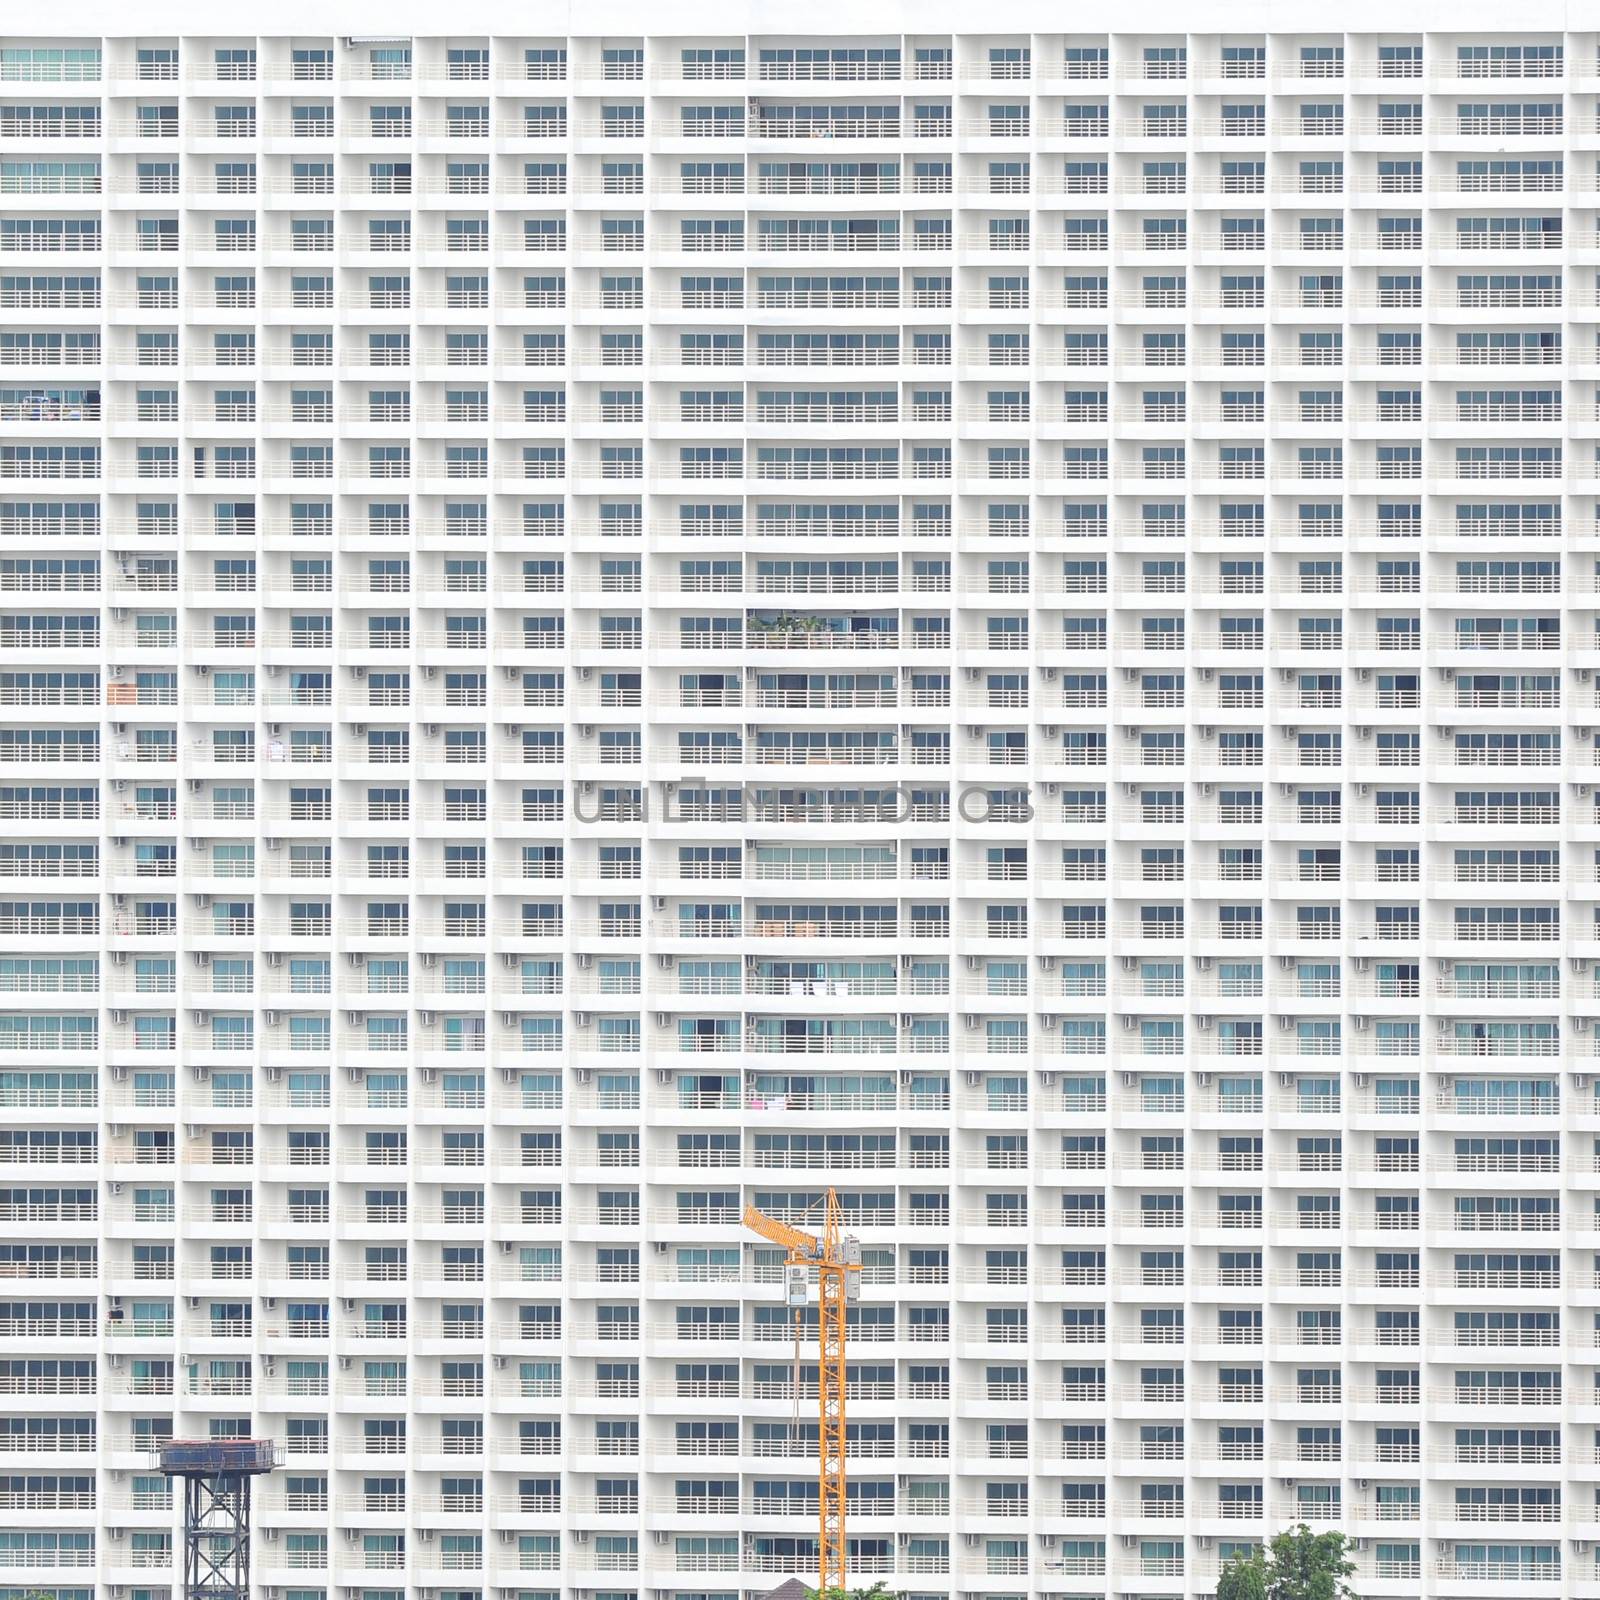 Condominium Backgrounds by antpkr